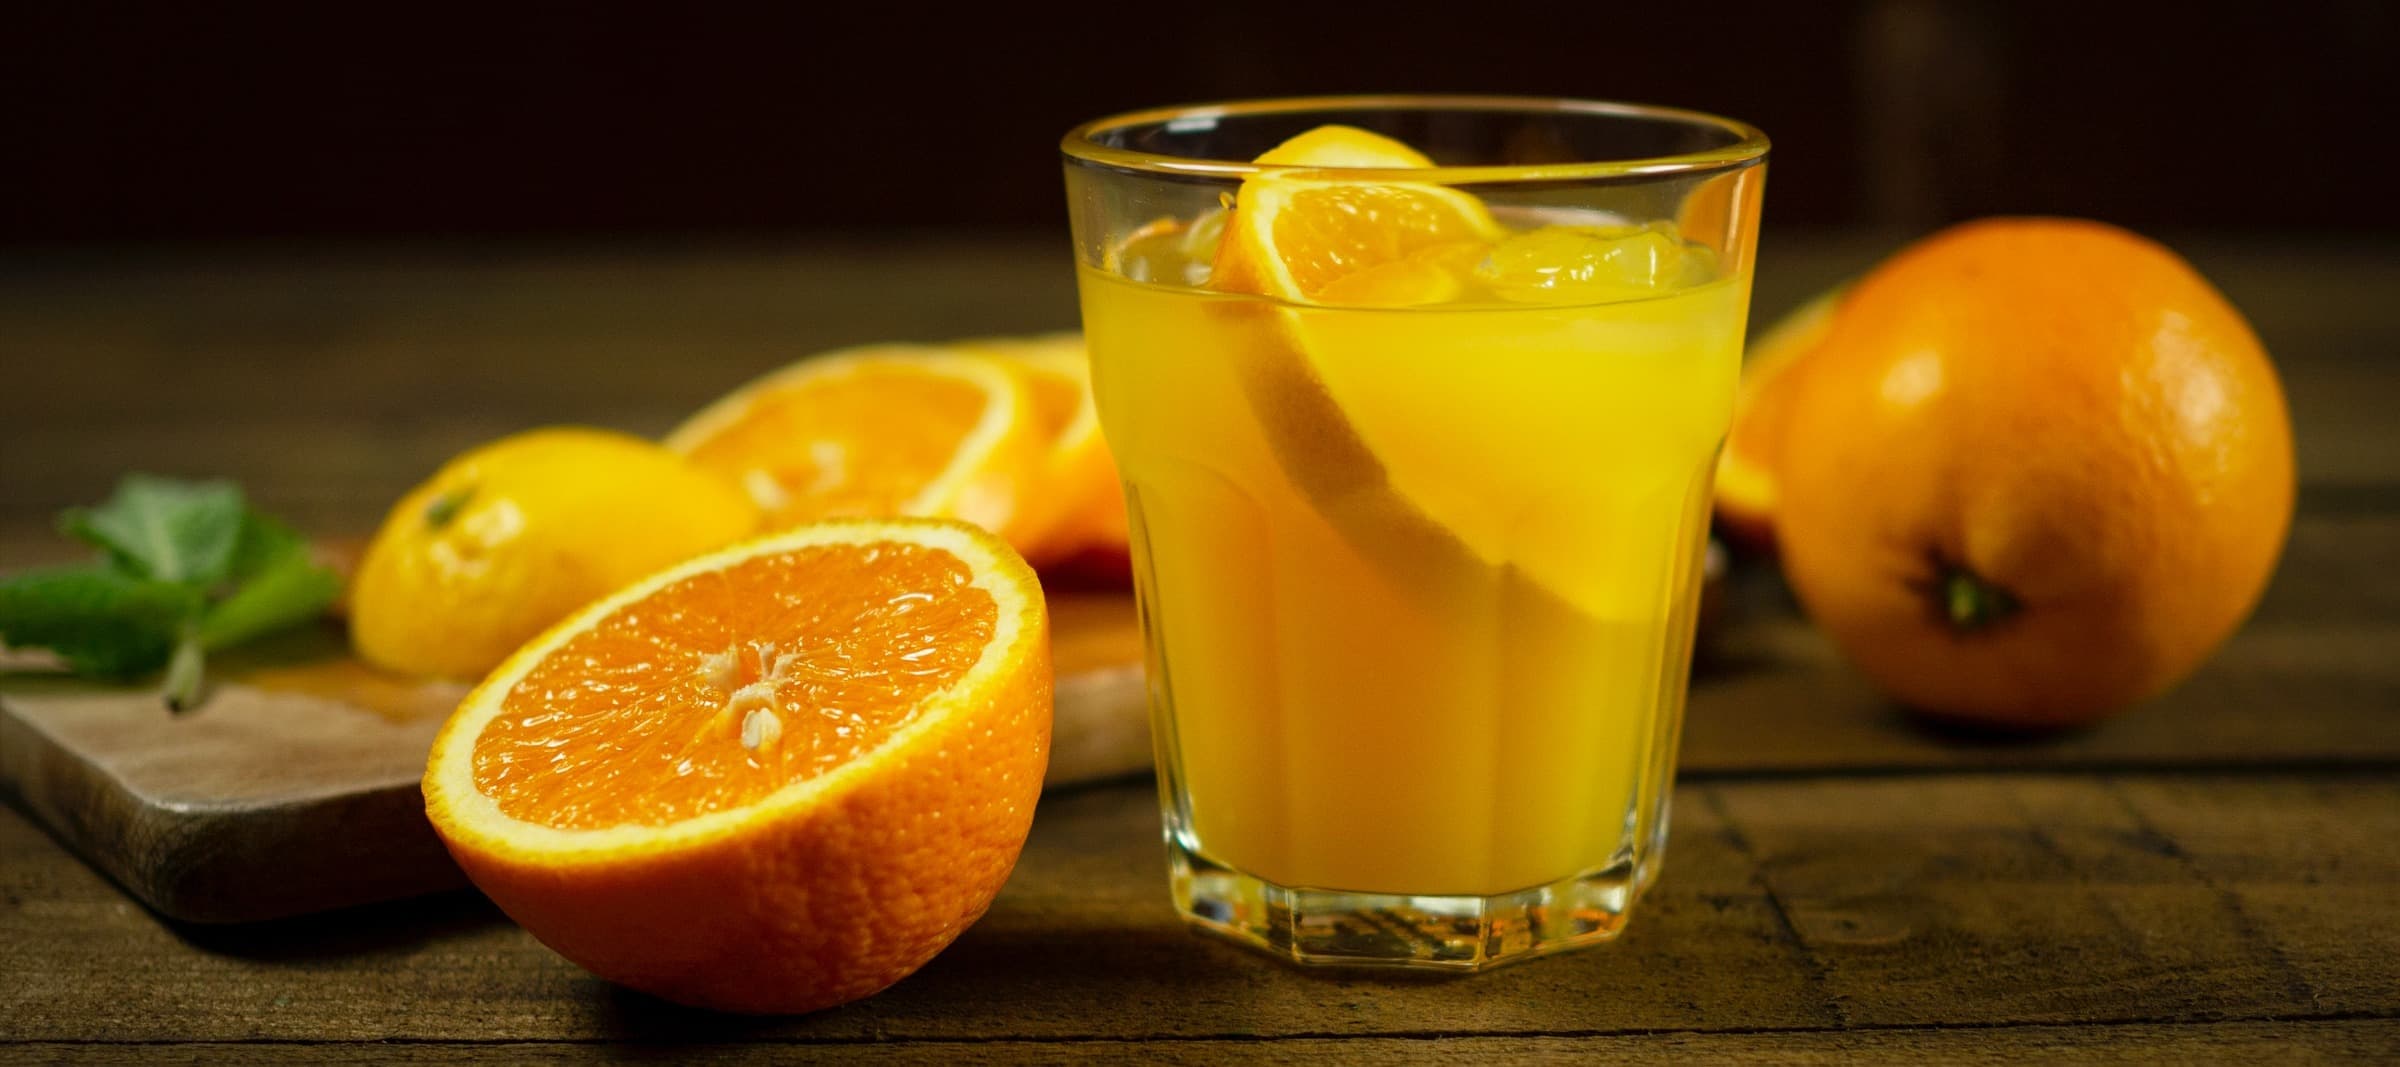 Фото новости: "Производители апельсинового сока попросили господдержки"